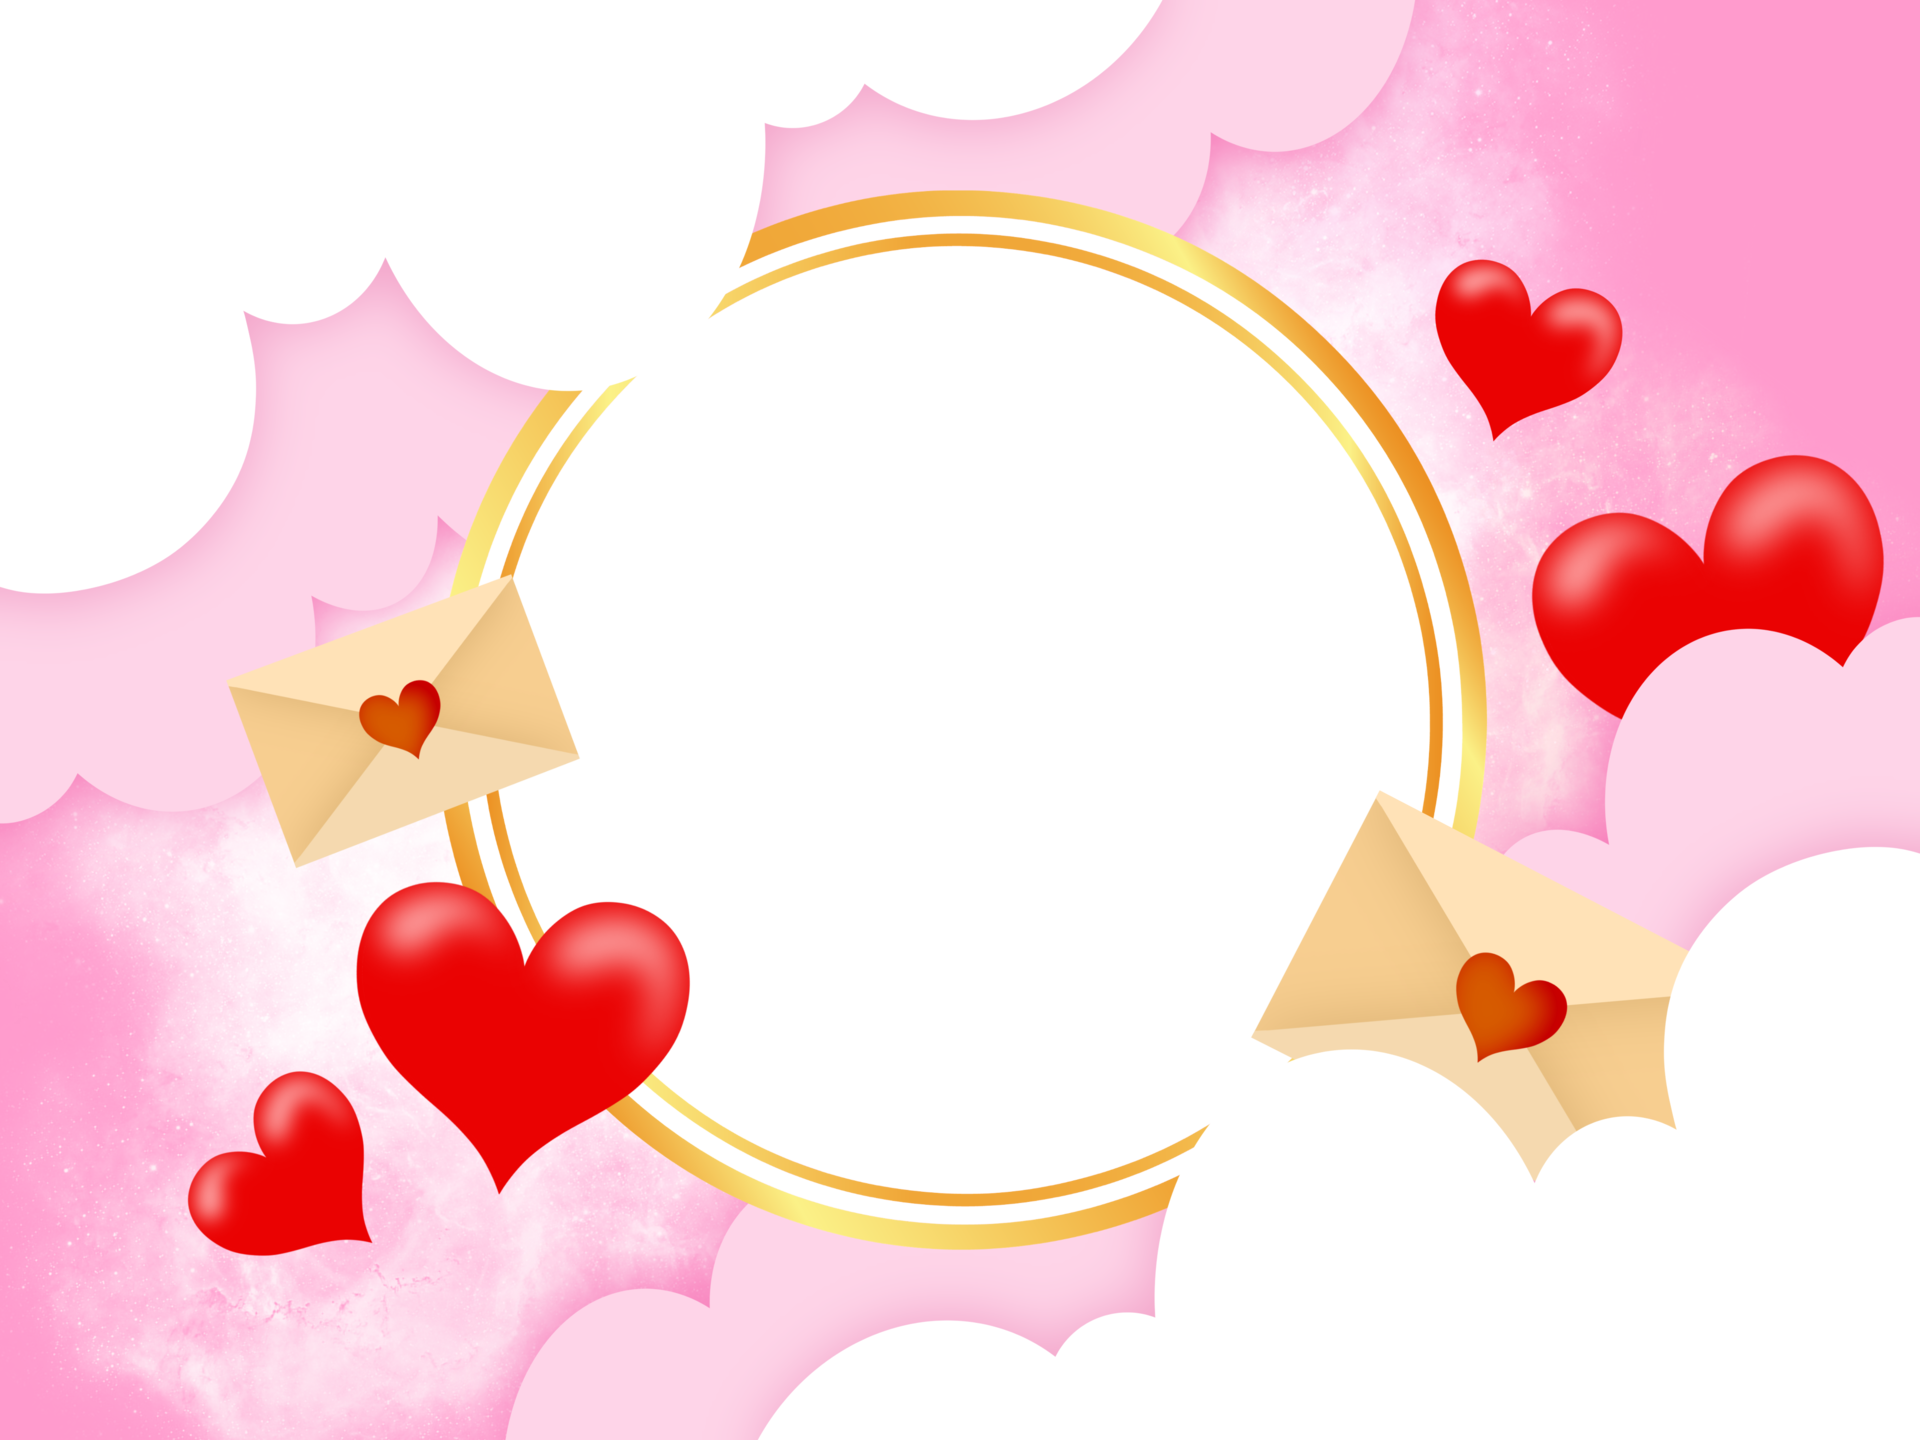 Khung hình tròn Valentine là một trong những phụ kiện tuyệt vời để làm nổi bật hình ảnh trong ngày Valentine. Với màu sắc, kiểu dáng đa dạng, khung hình tròn sẽ giúp cho bức ảnh của bạn trở nên nổi bật và đẹp hơn bao giờ hết. Hãy xem ngay hình ảnh liên quan để lựa chọn cho mình một khung hình ưng ý nhất!